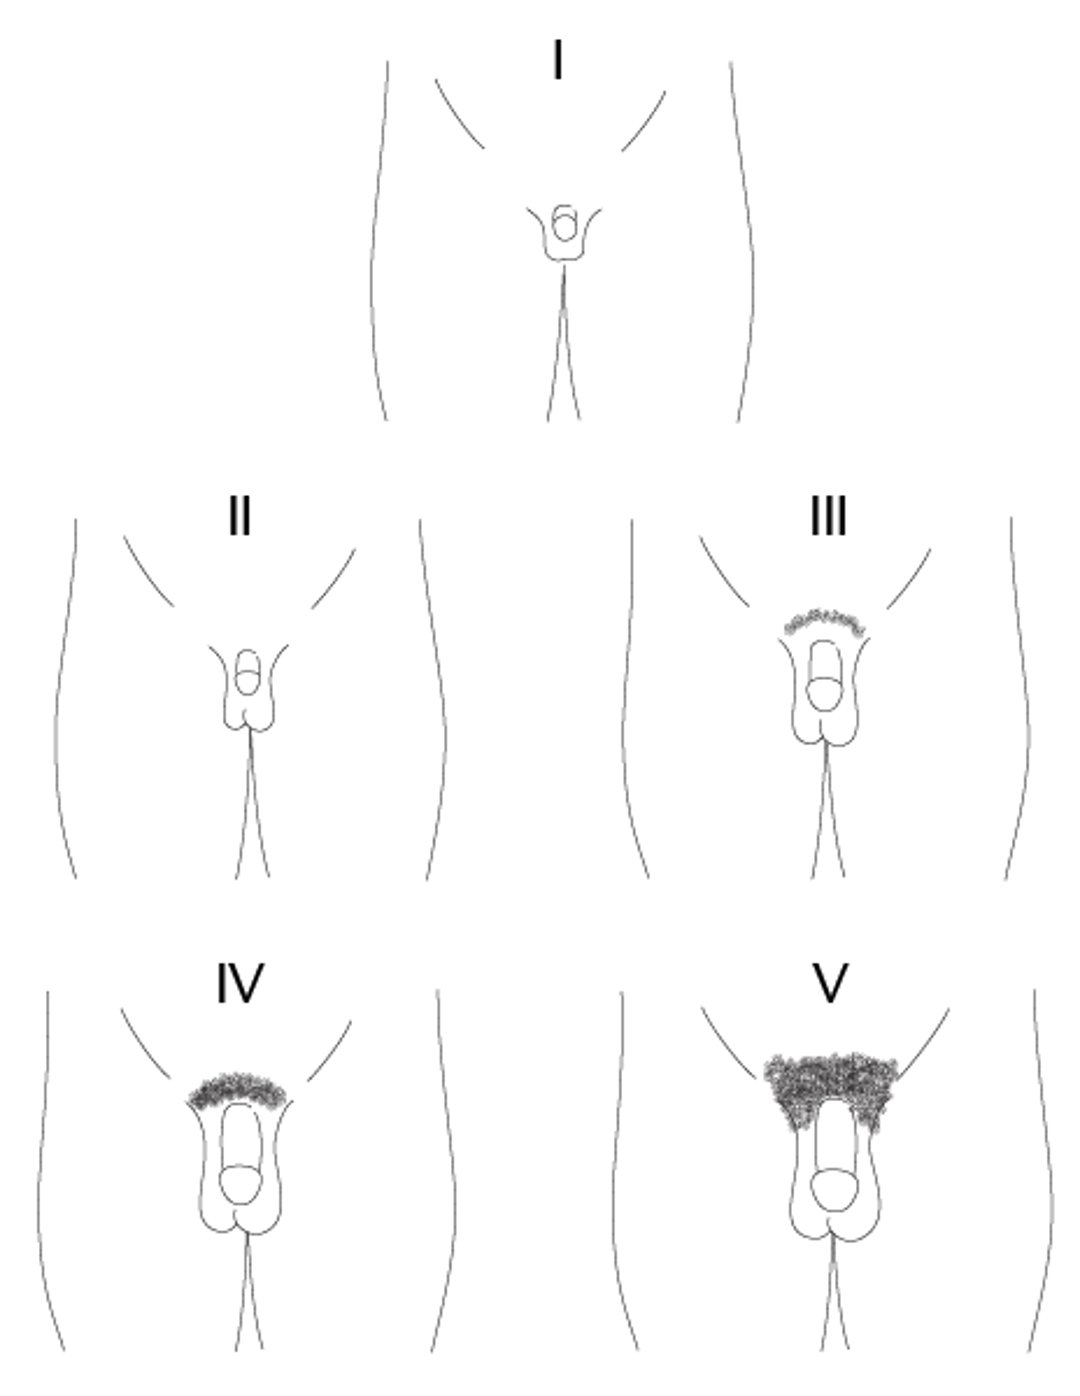 Biểu diễn bằng sơ đồ các giai đoạn Tanner từ I đến V của quá trình trưởng thành dương vật ở trẻ em trai